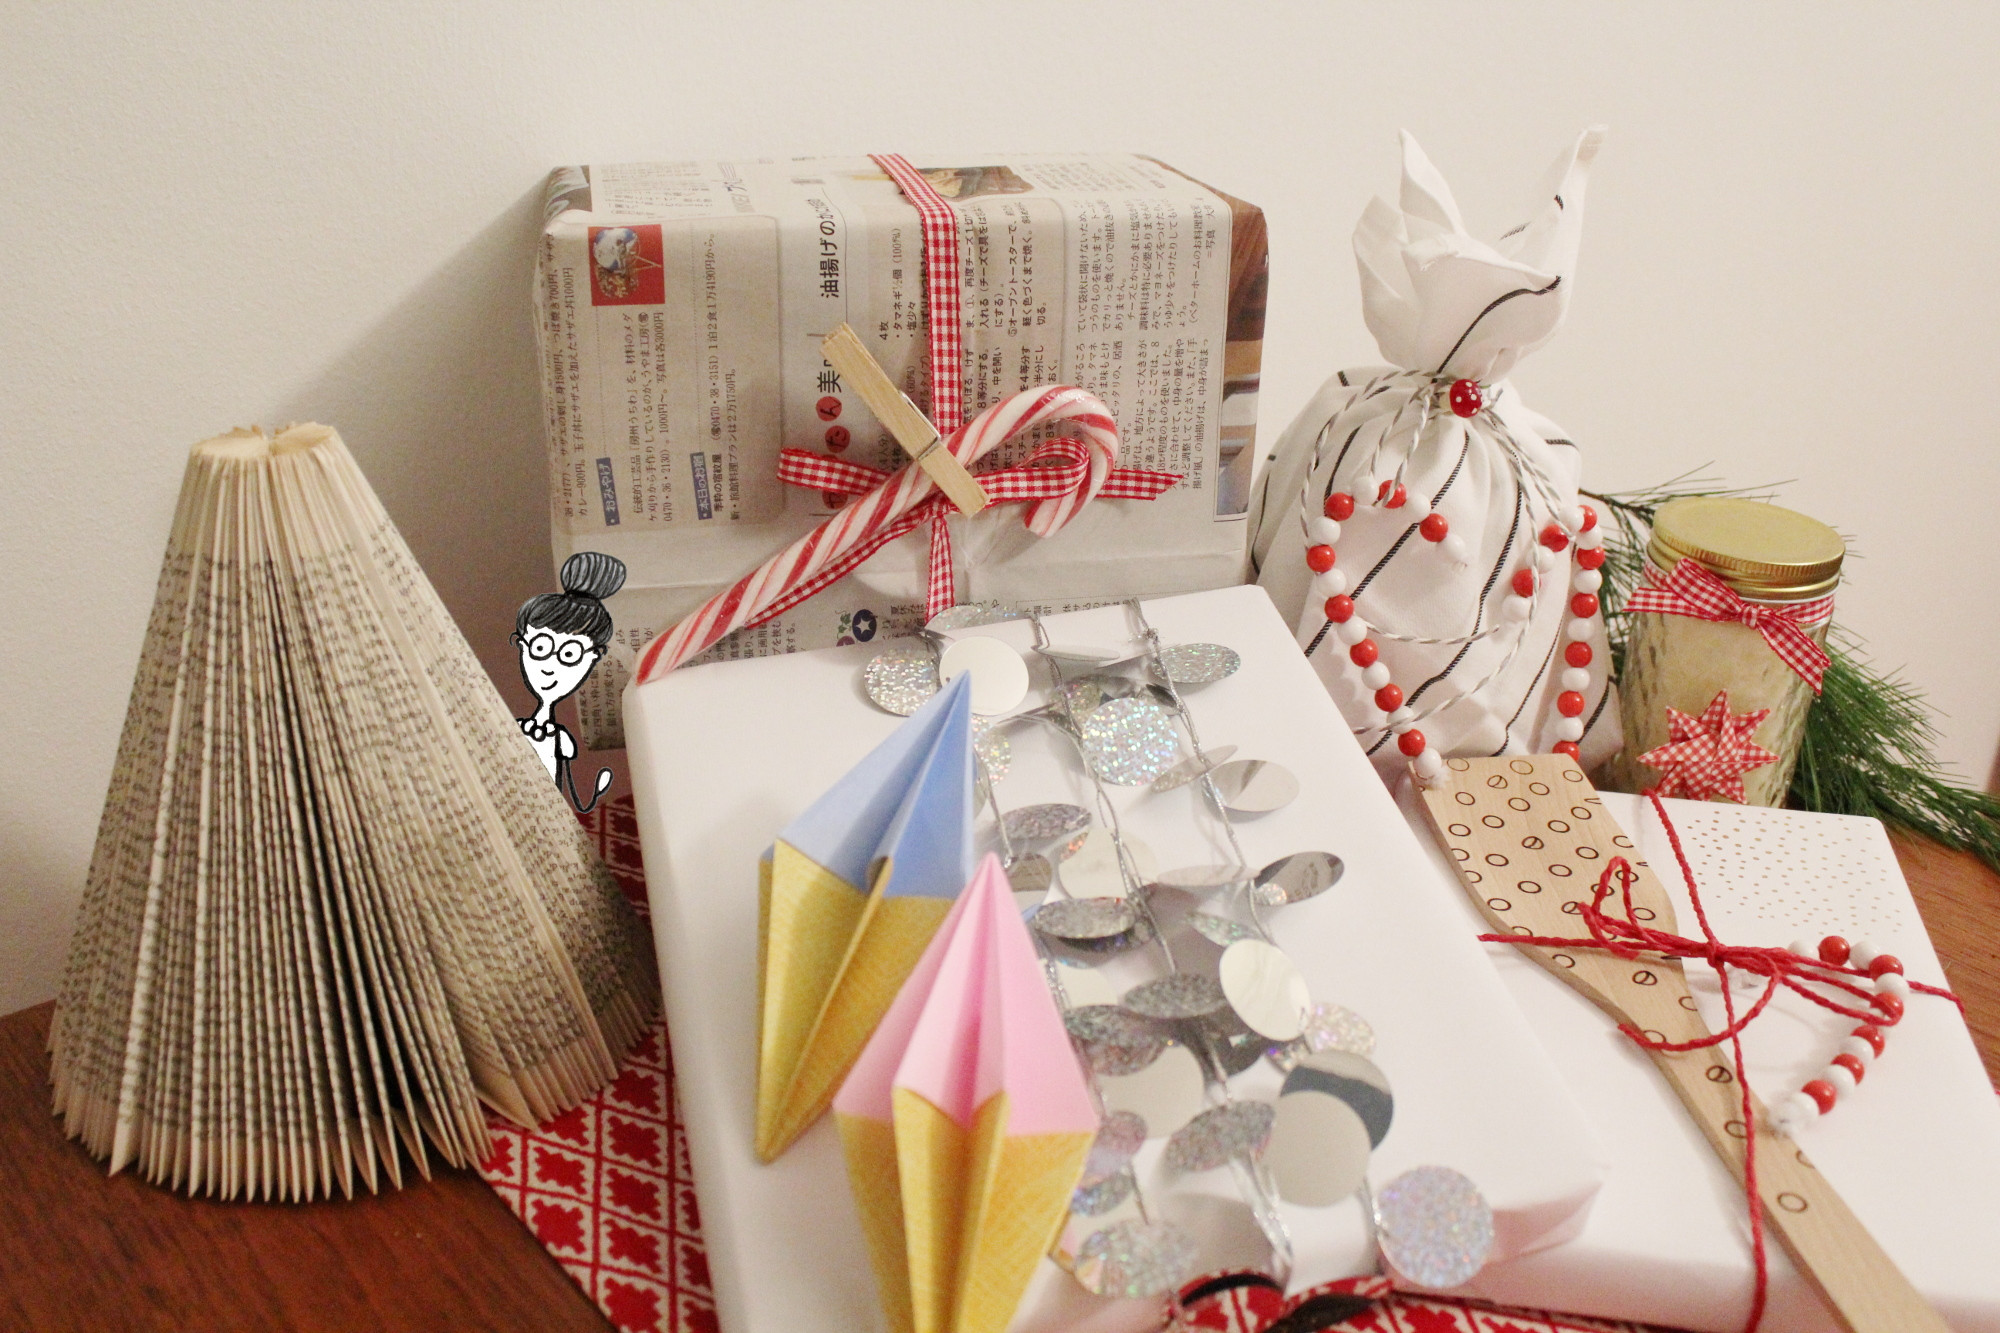 Geschenkideen Für Frauen
 Geschenke einfach & originell verpacken